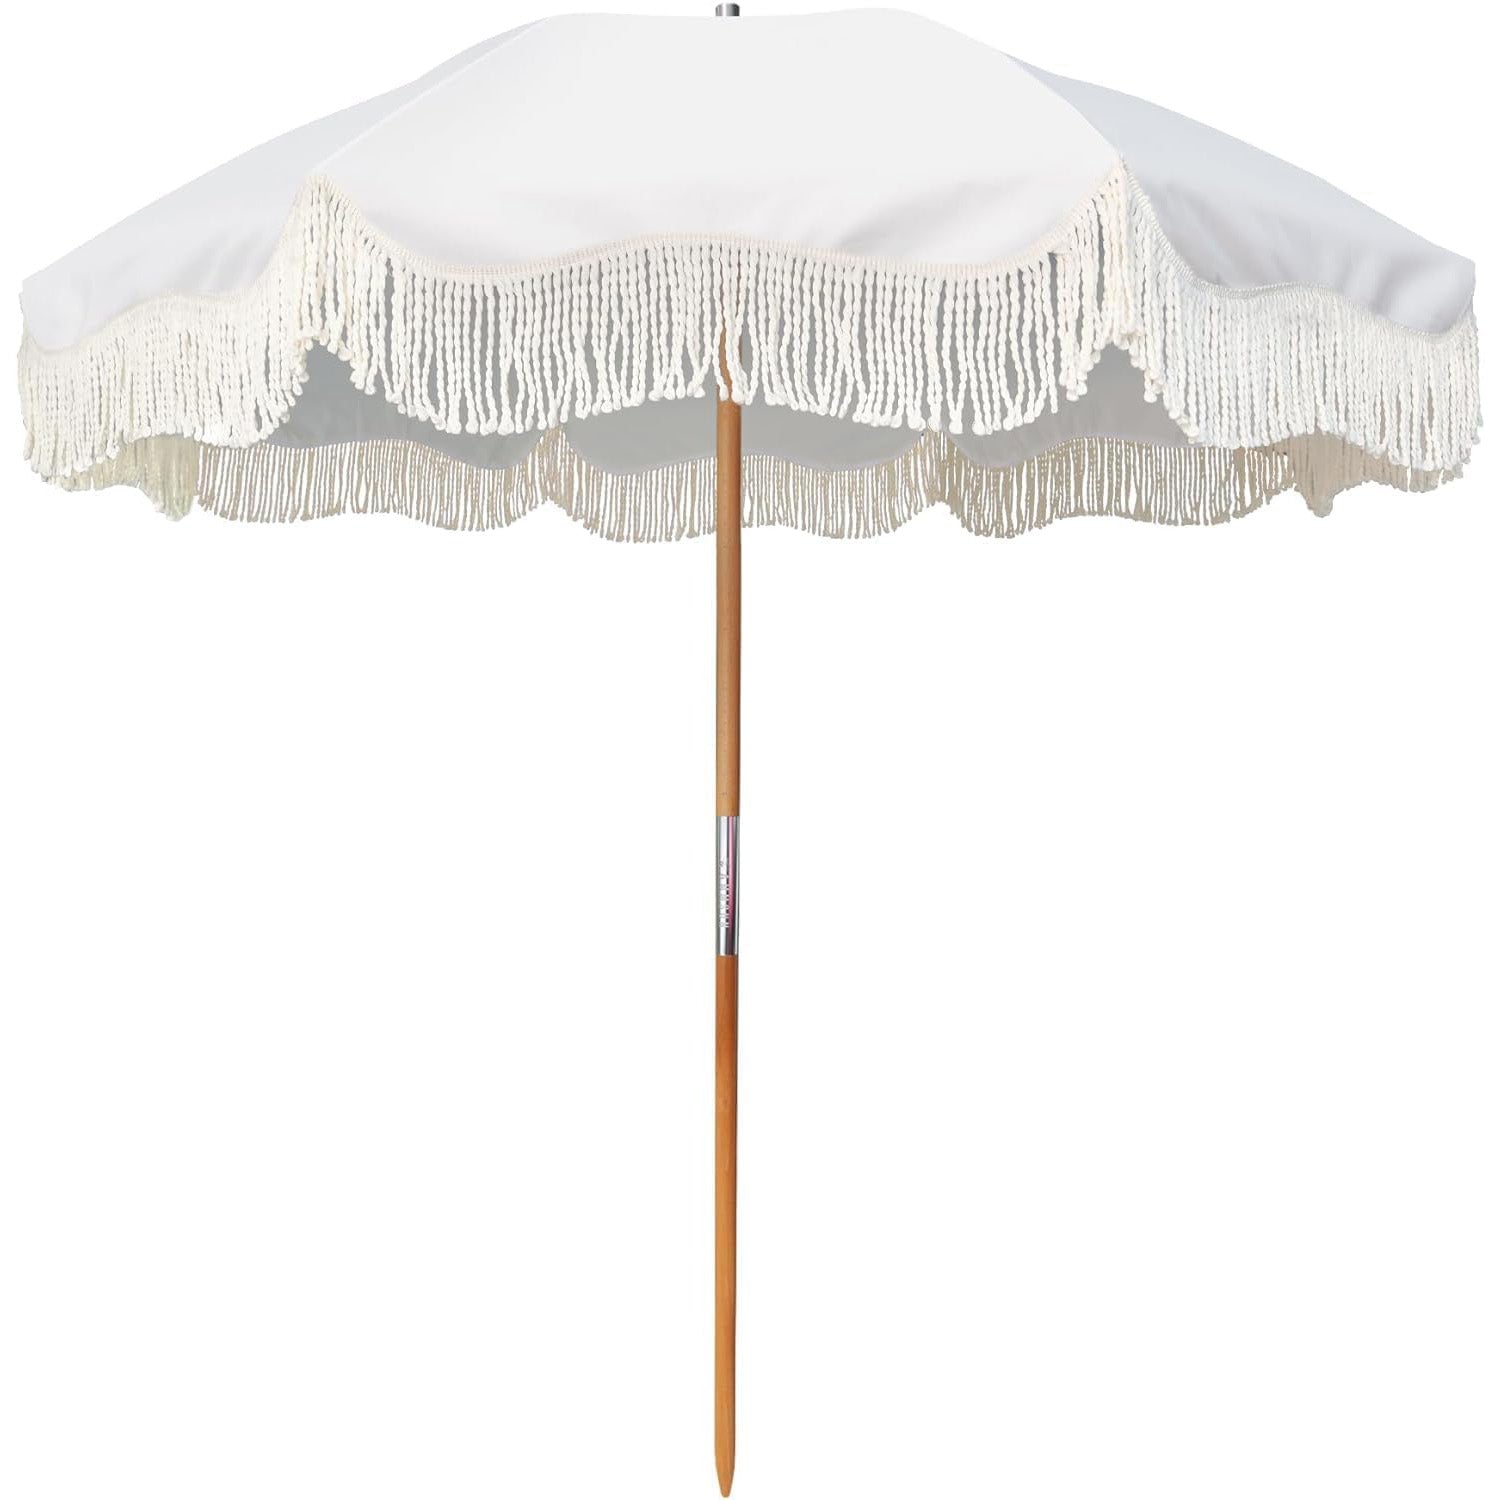 AMMSUN 6.5ft Boho Beach Umbrella with Fringe Elegant White